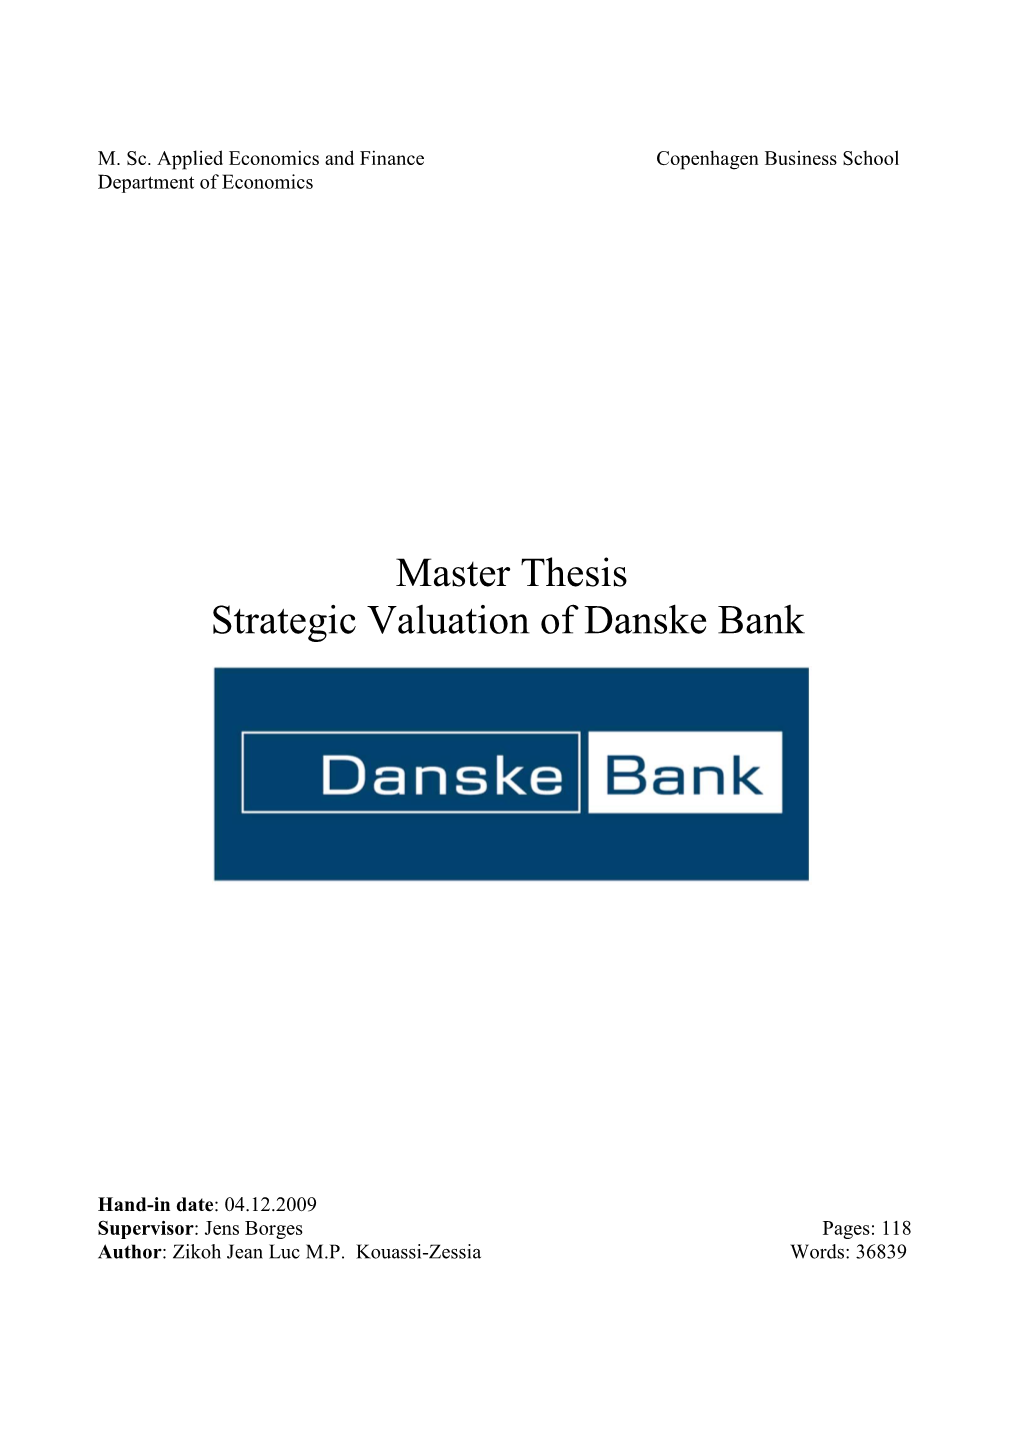 Master Thesis Strategic Valuation of Danske Bank